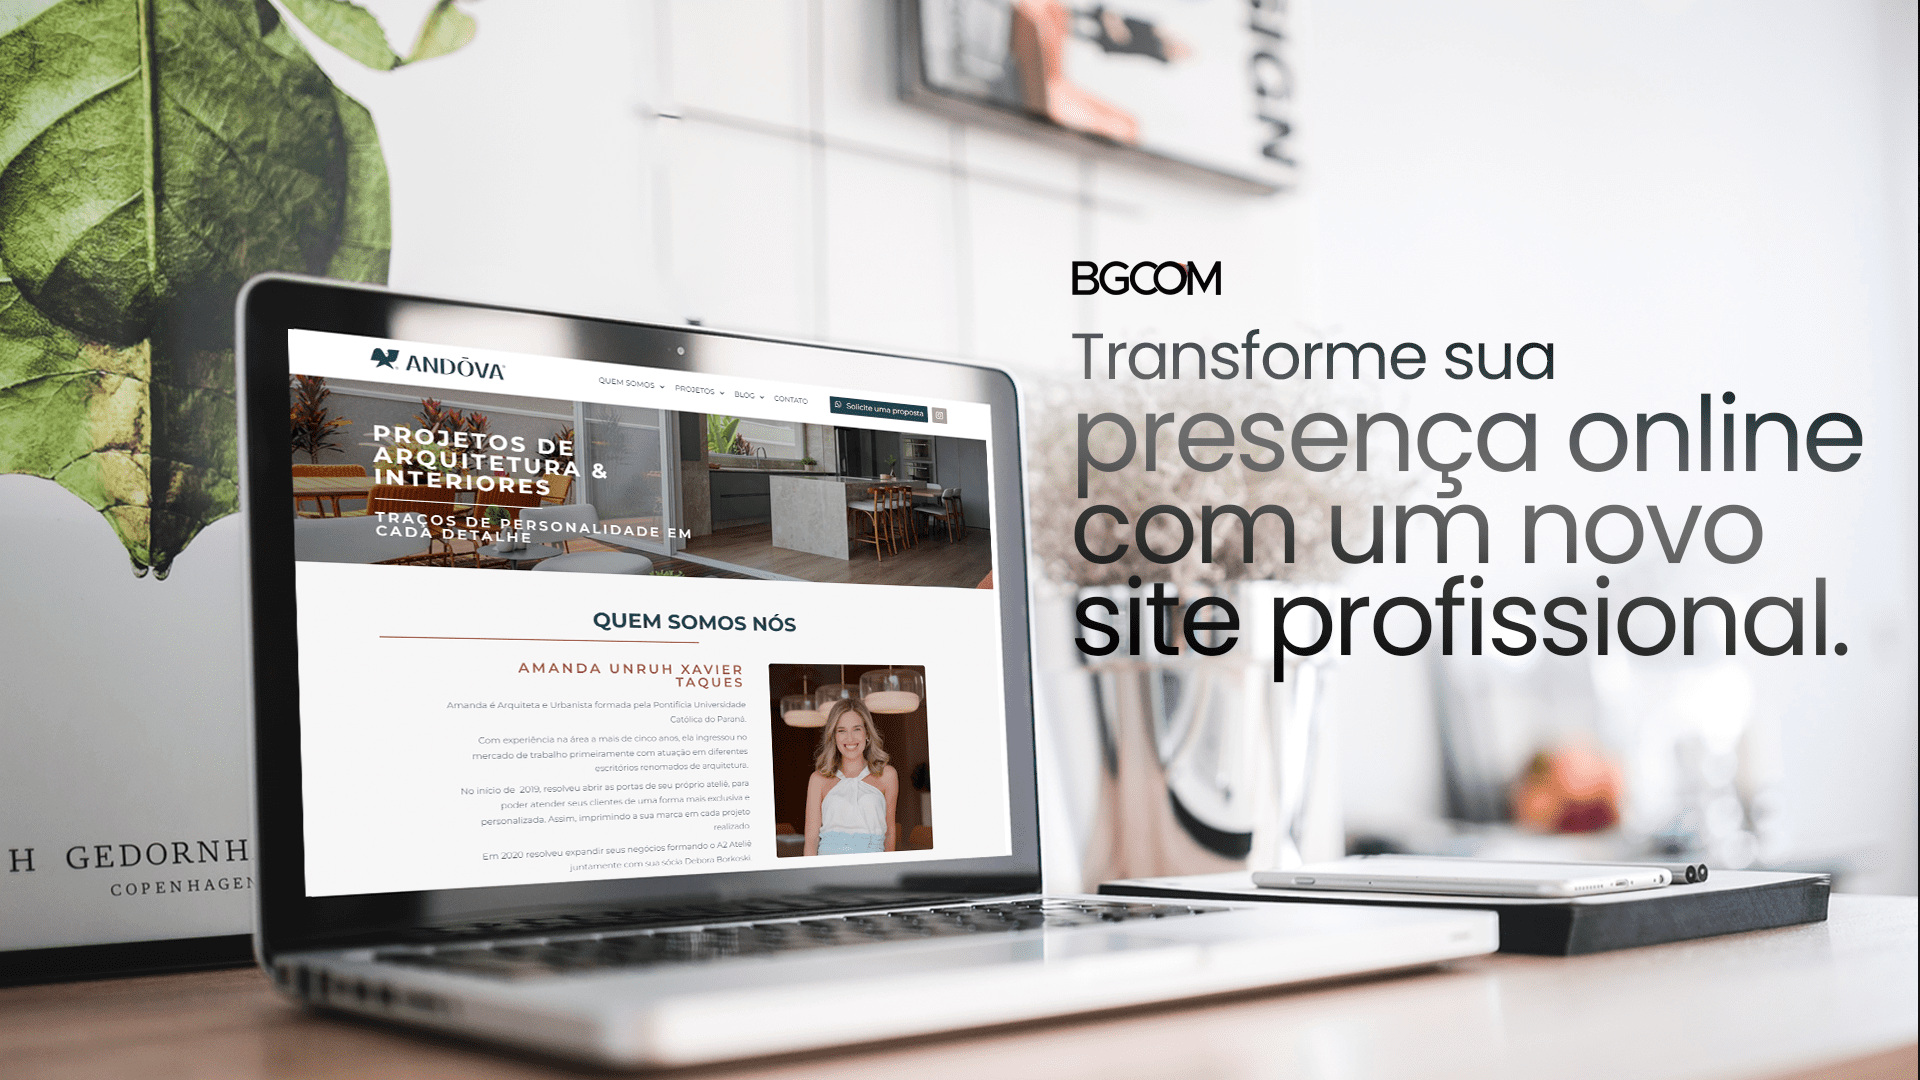 Transforme sua presença online com um novo site profissional BGCOM 1